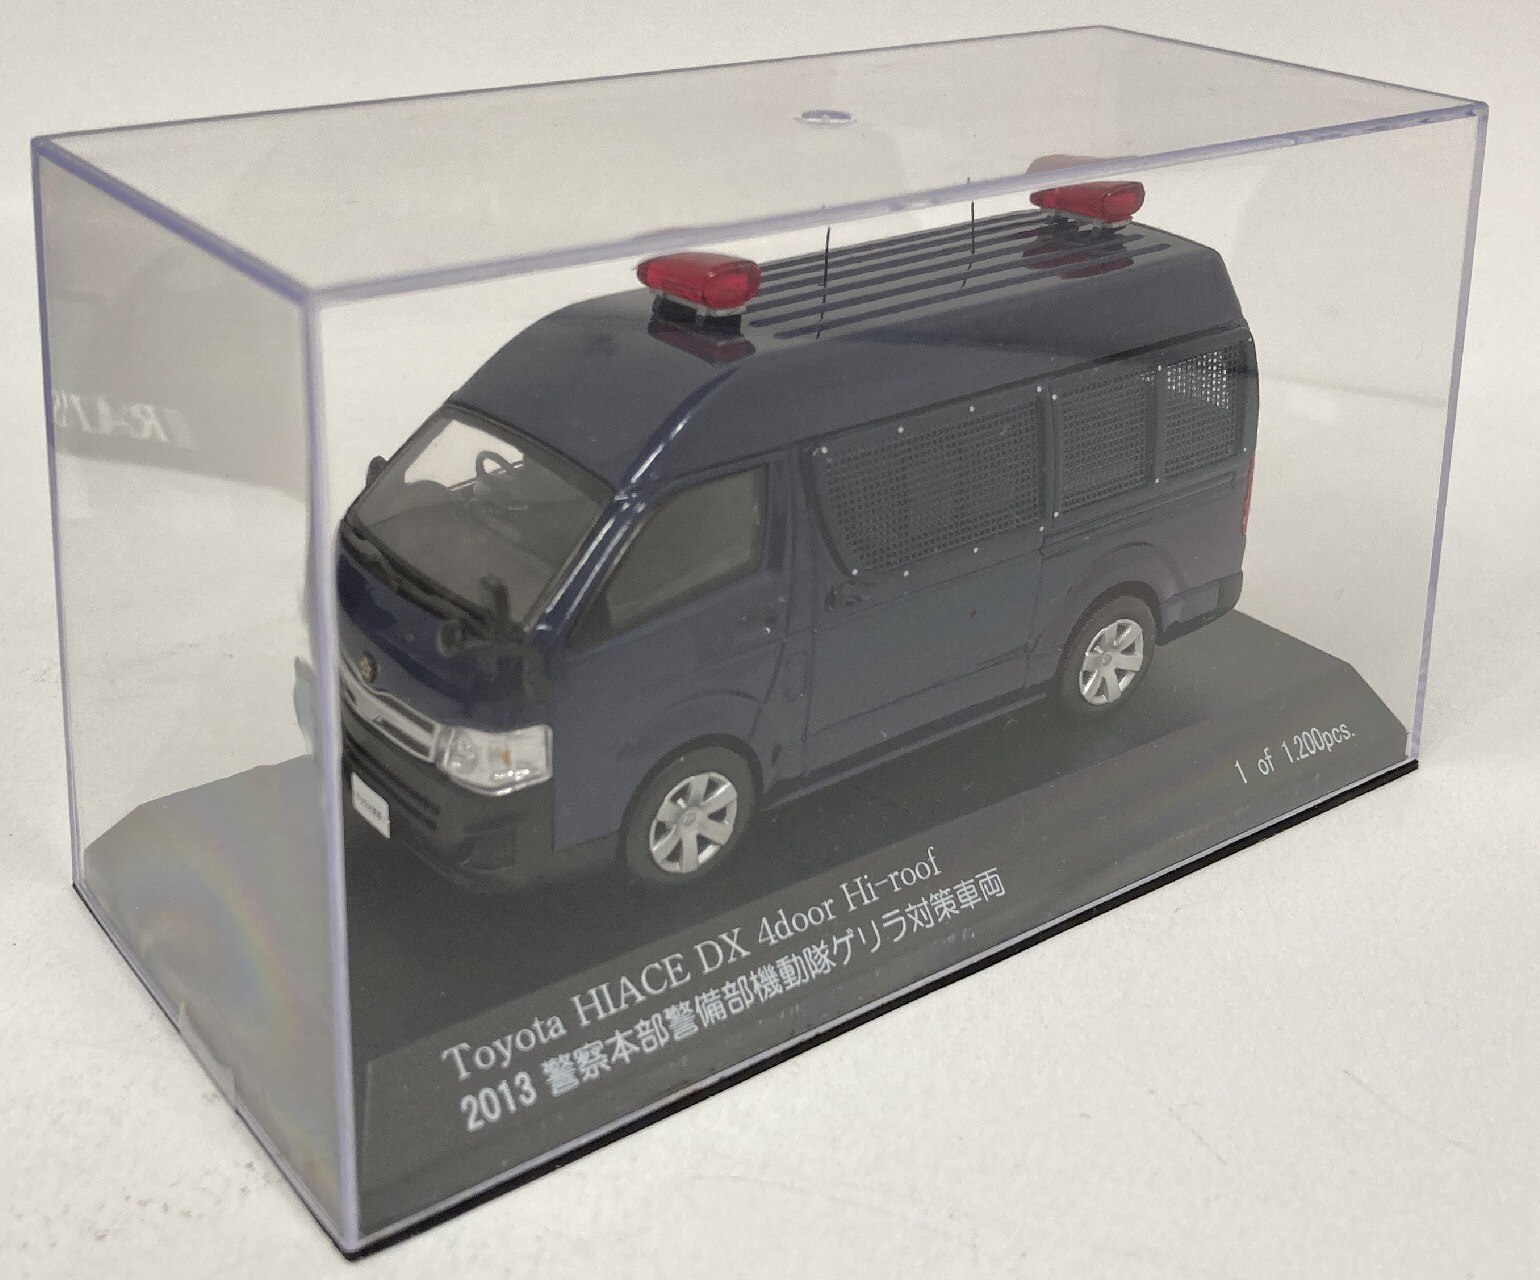 警察本部警備部機動隊ゲリラ対策車両 ハイエース - おもちゃ